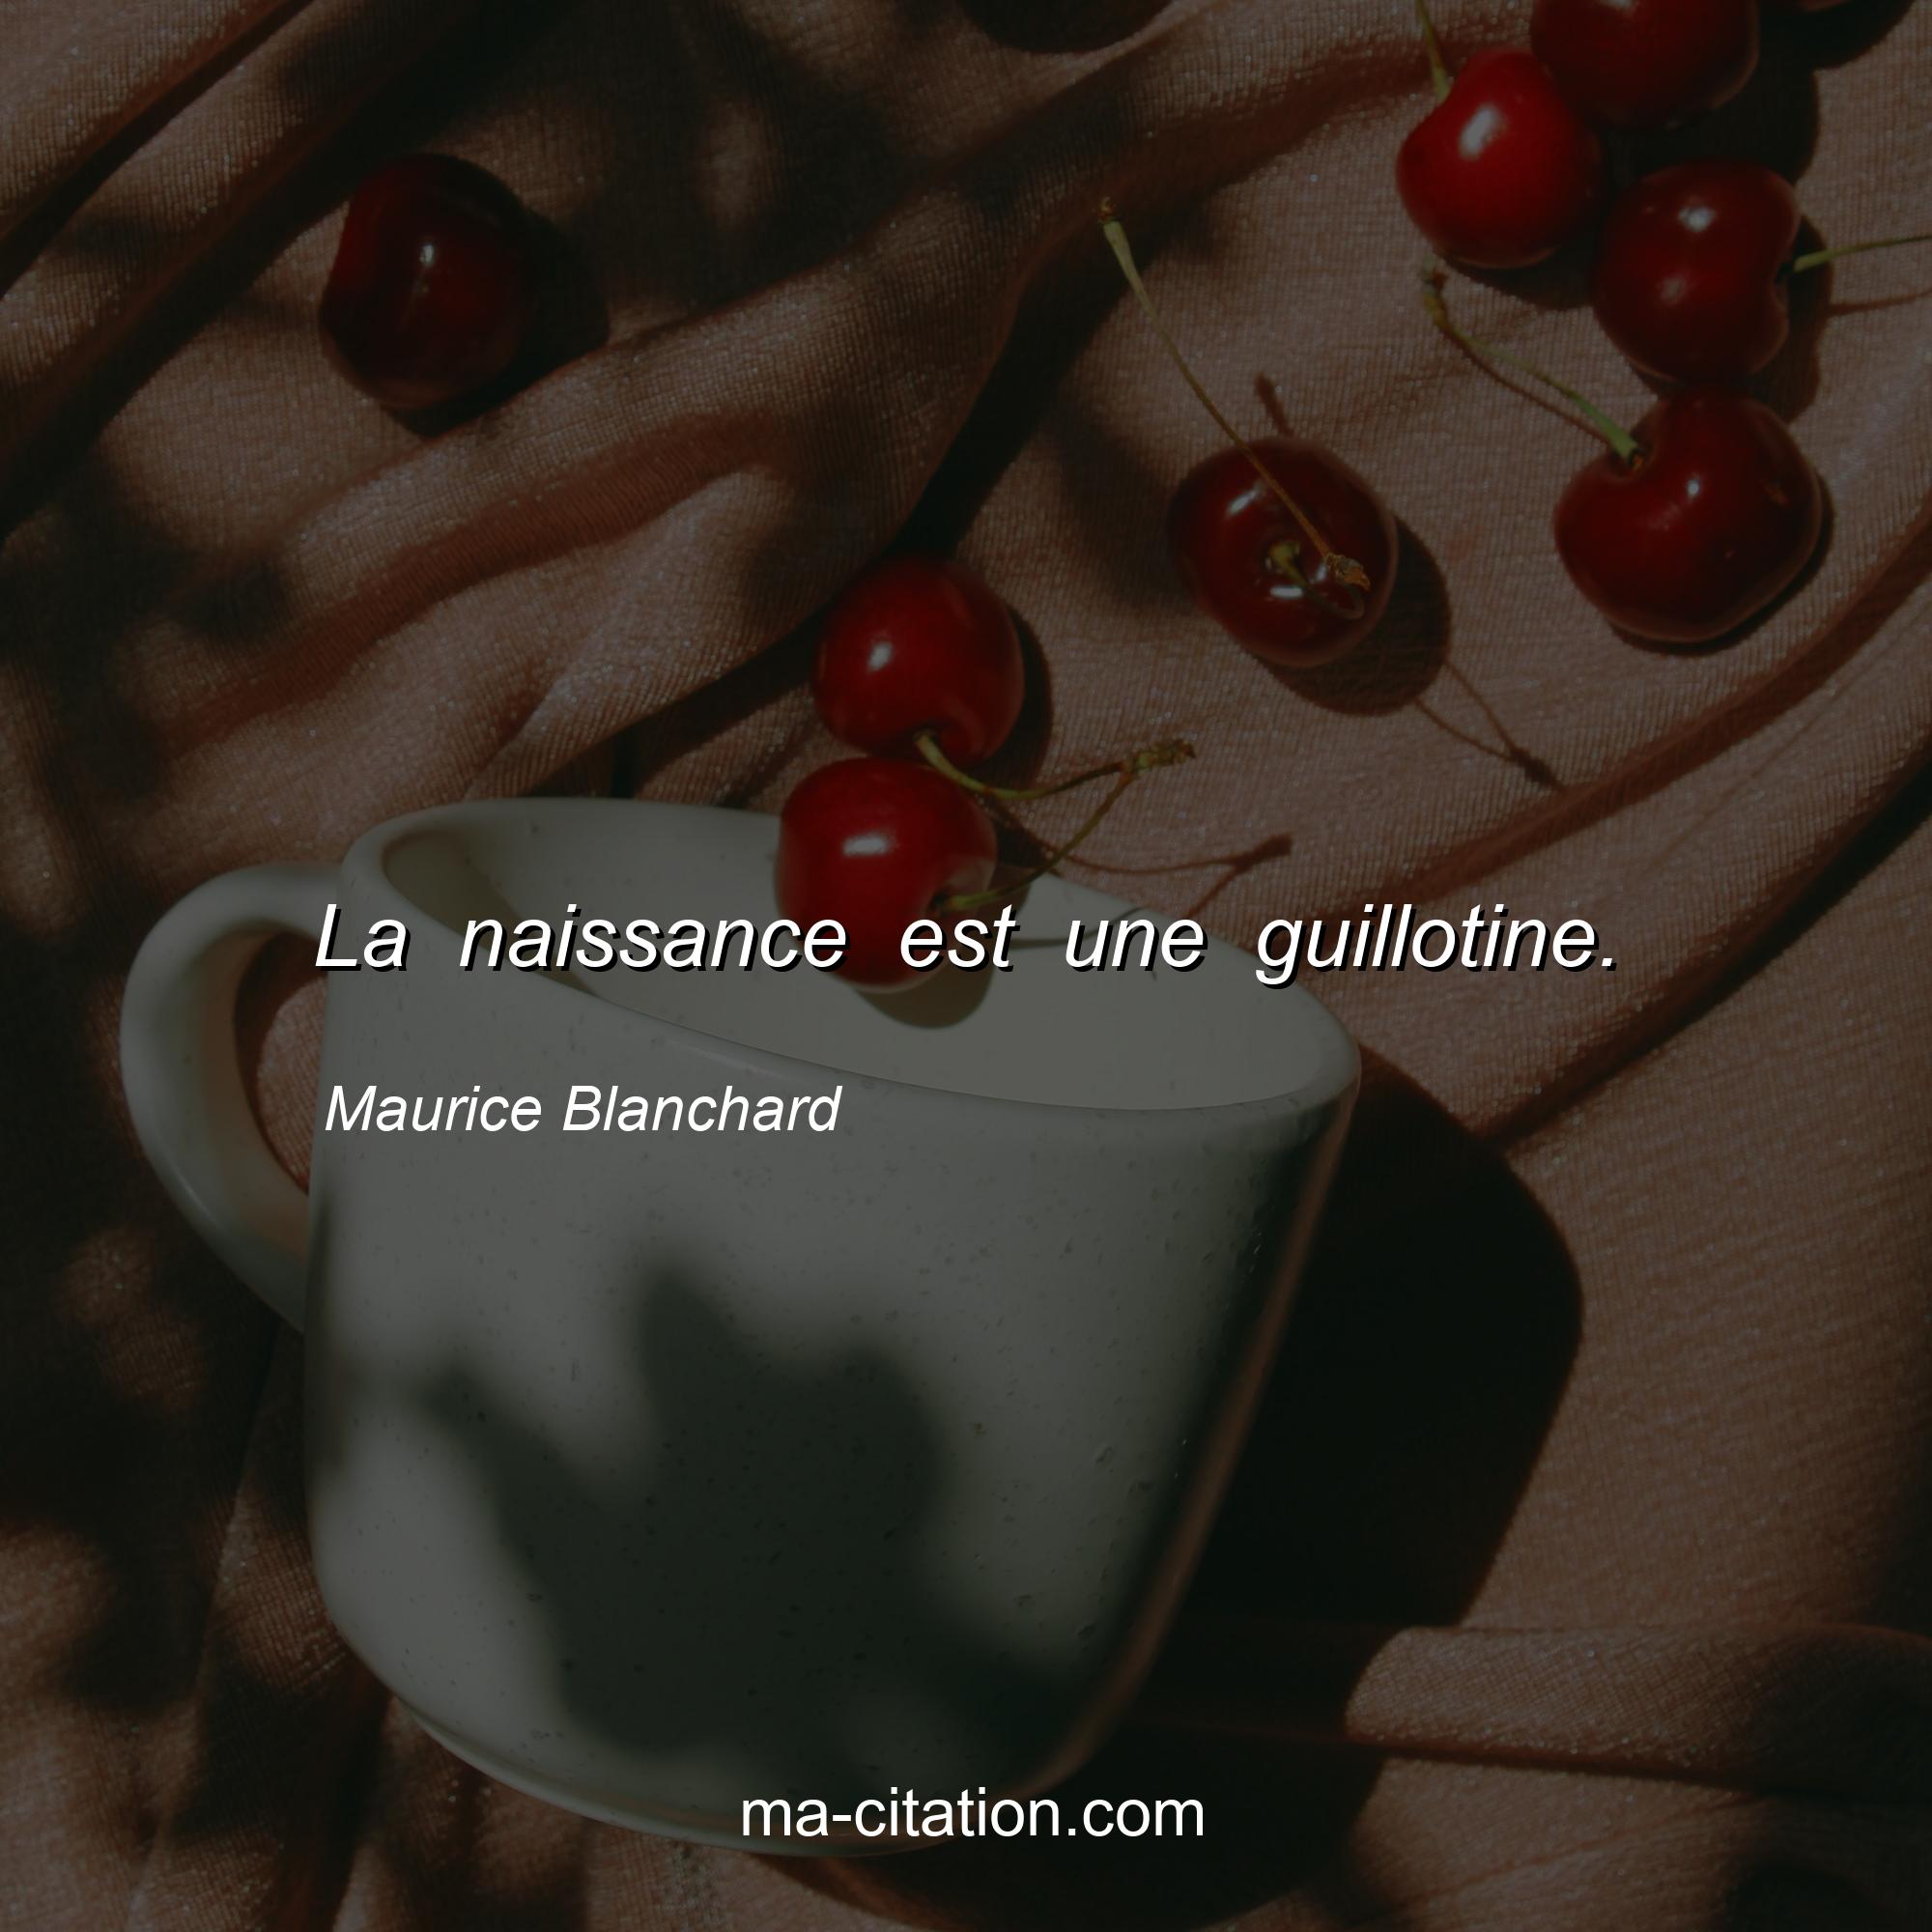 Maurice Blanchard : La naissance est une guillotine.